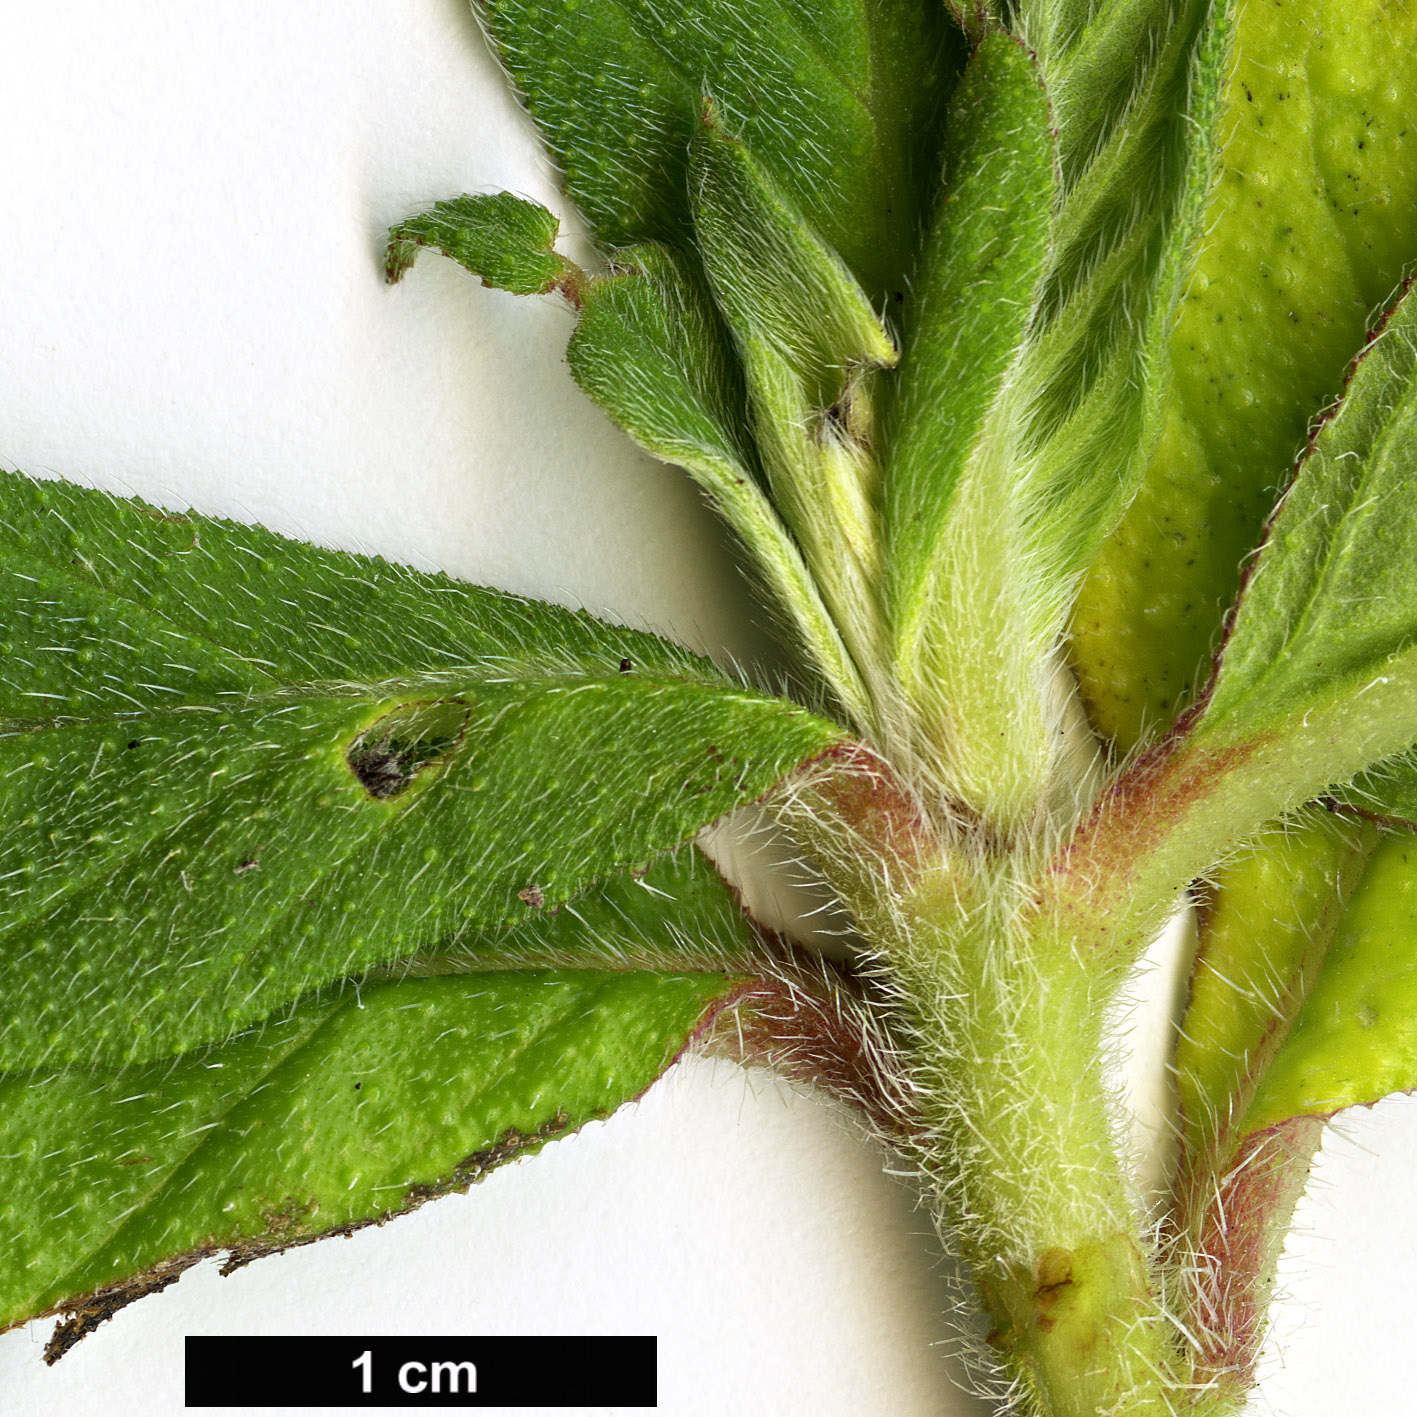 High resolution image: Family: Boraginaceae - Genus: Echium - Taxon: strictum - SpeciesSub: subsp. exasperatum